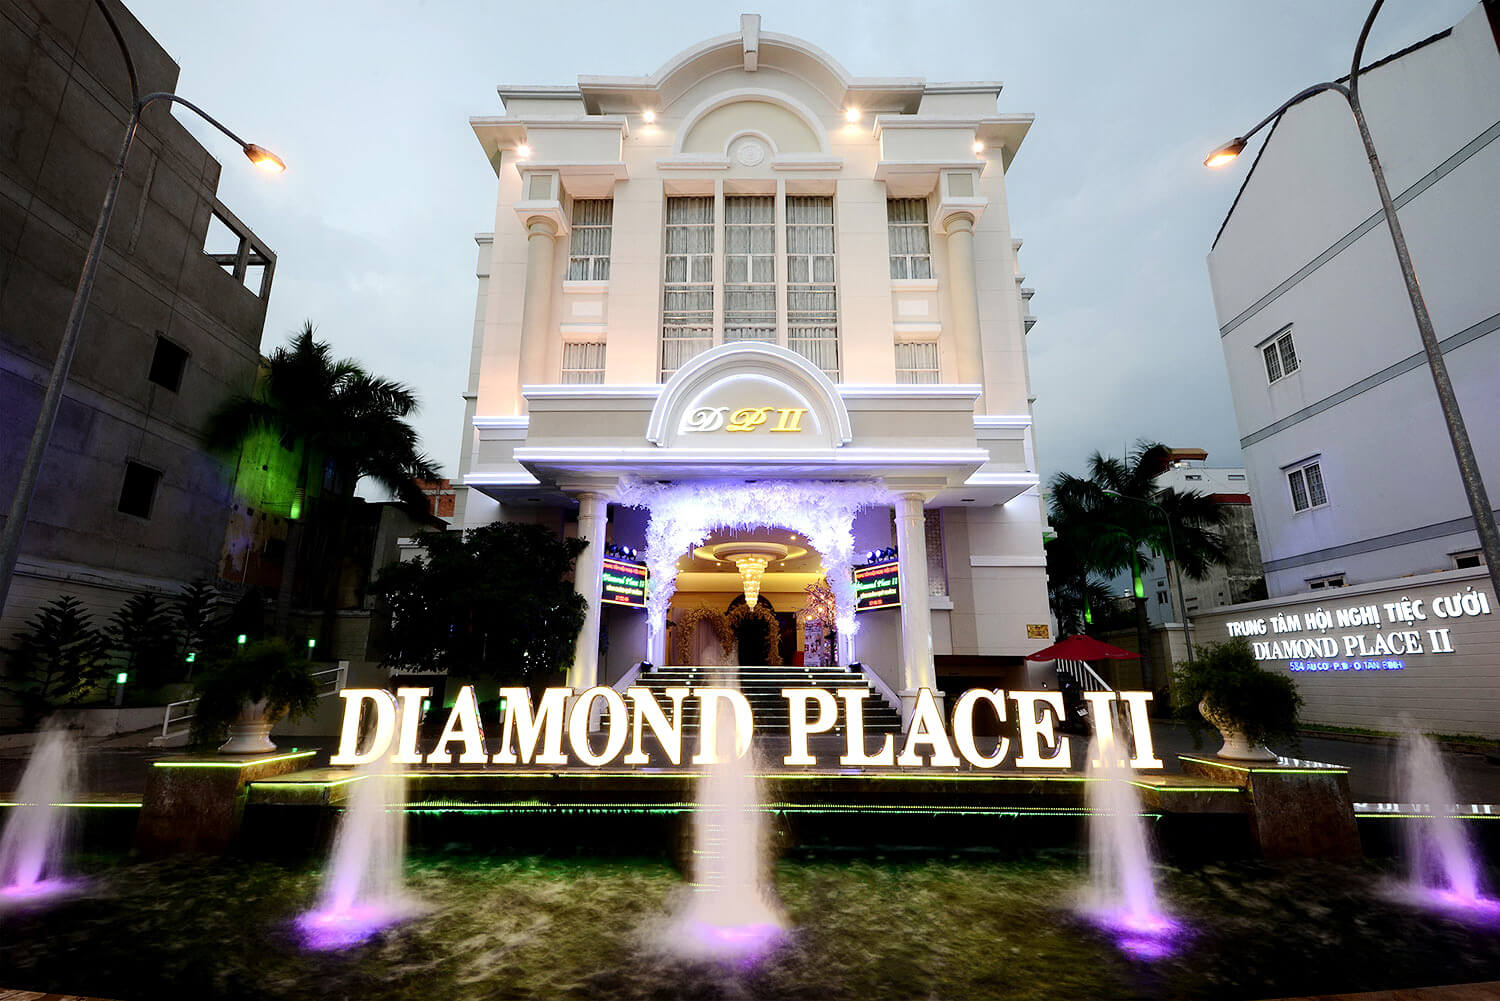 Trung tâm hội nghị tiệc cưới Diamond Place 